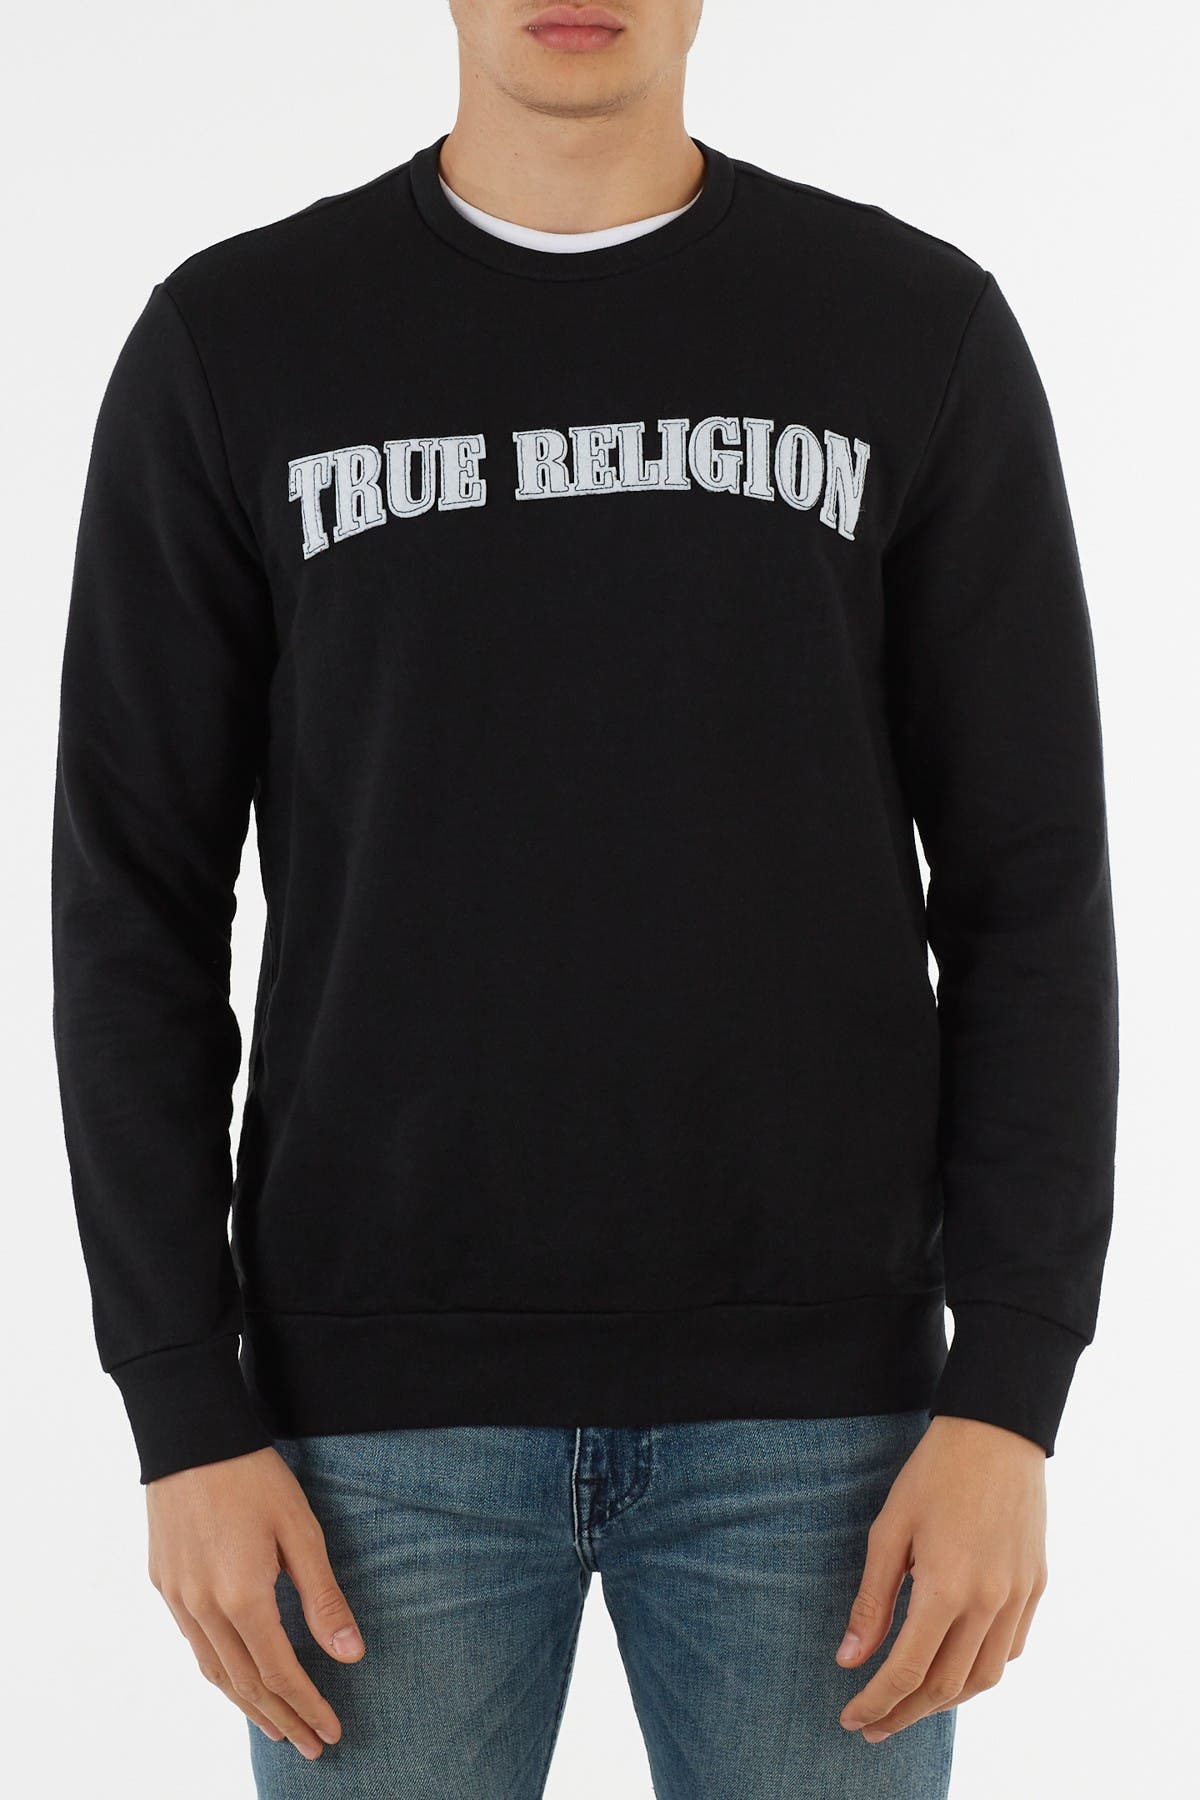 true religion crew neck